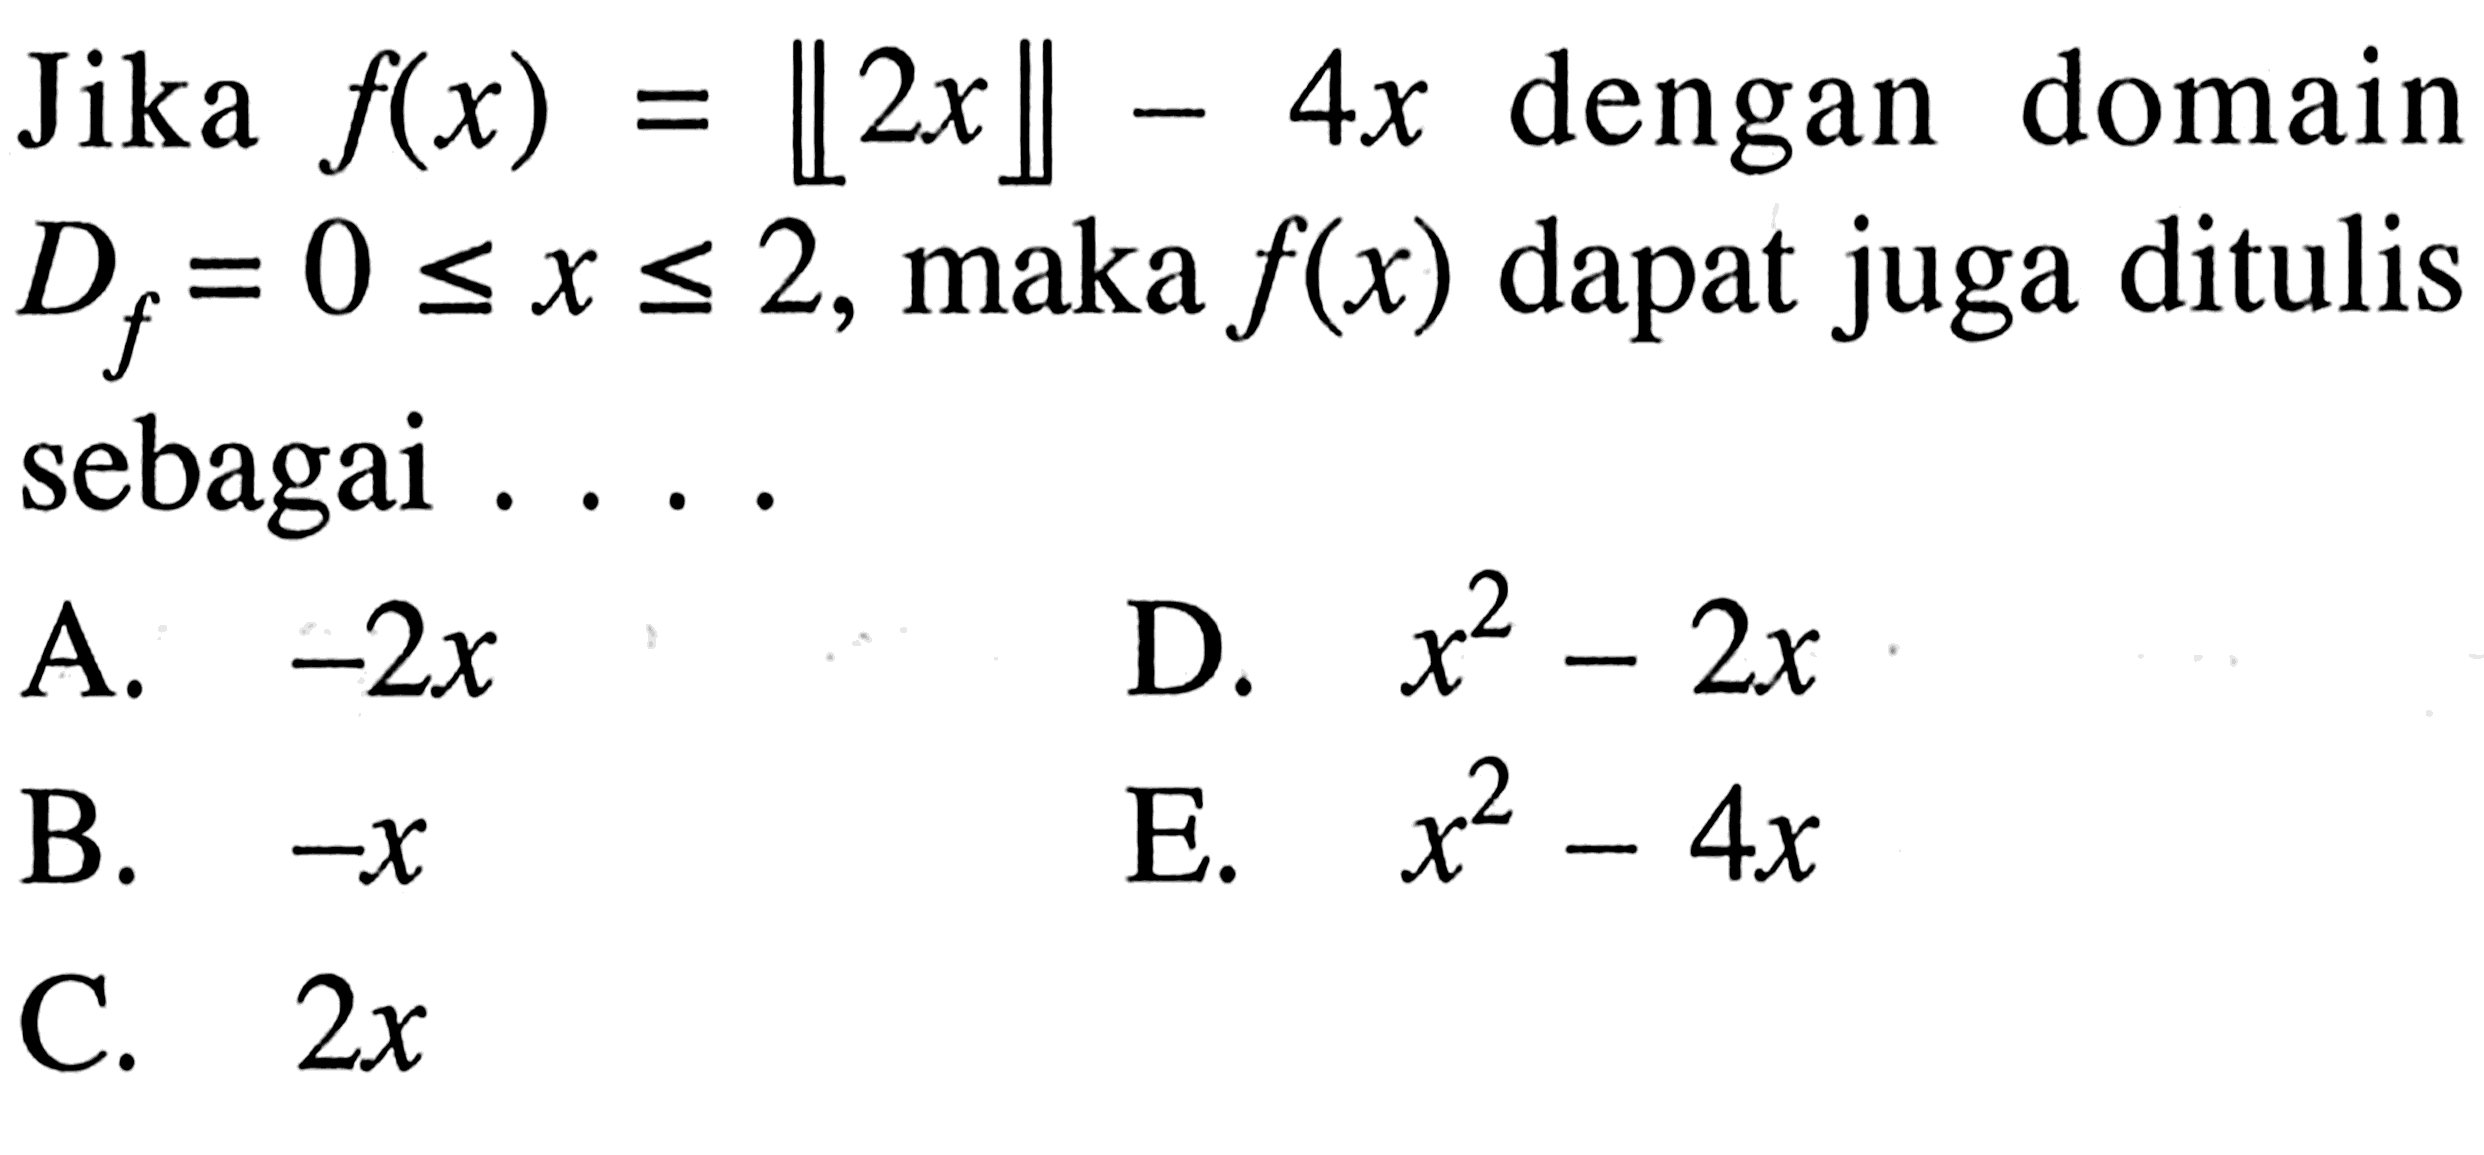 Jika f(x)=[[2x]]-4x dengan domain Df=0<=x<=2, maka f(x) dapat juga ditulis sebagai ....